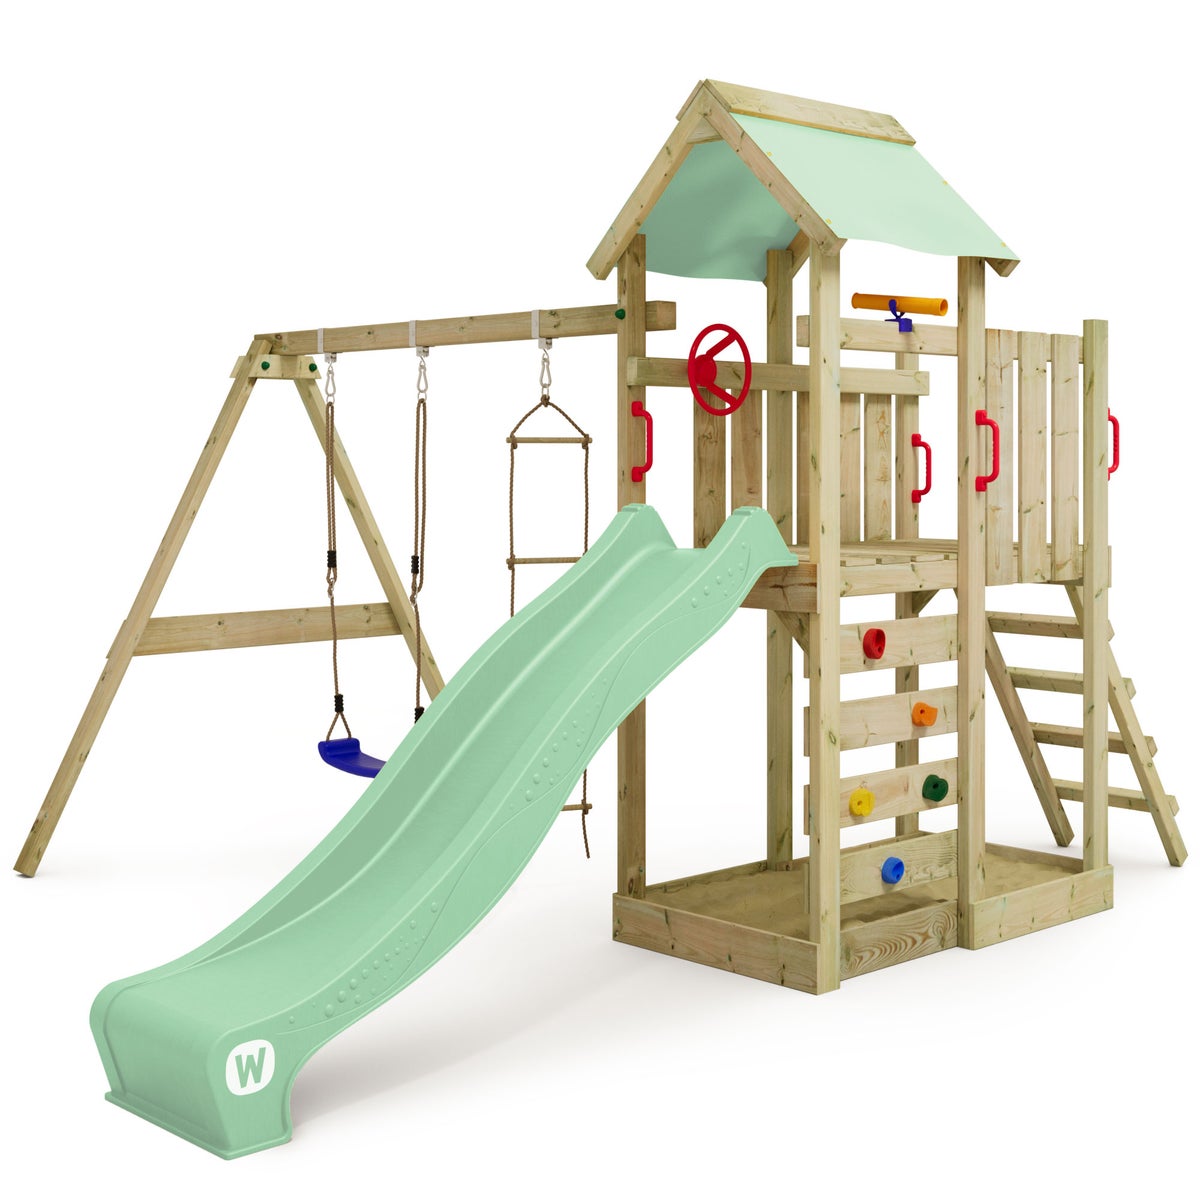 WICKEY Spielturm Klettergerüst MultiFlyer mit Schaukel und Rutsche, Kletterturm mit Sandkasten, Leiter und Spiel-Zubehör – pastellgrün